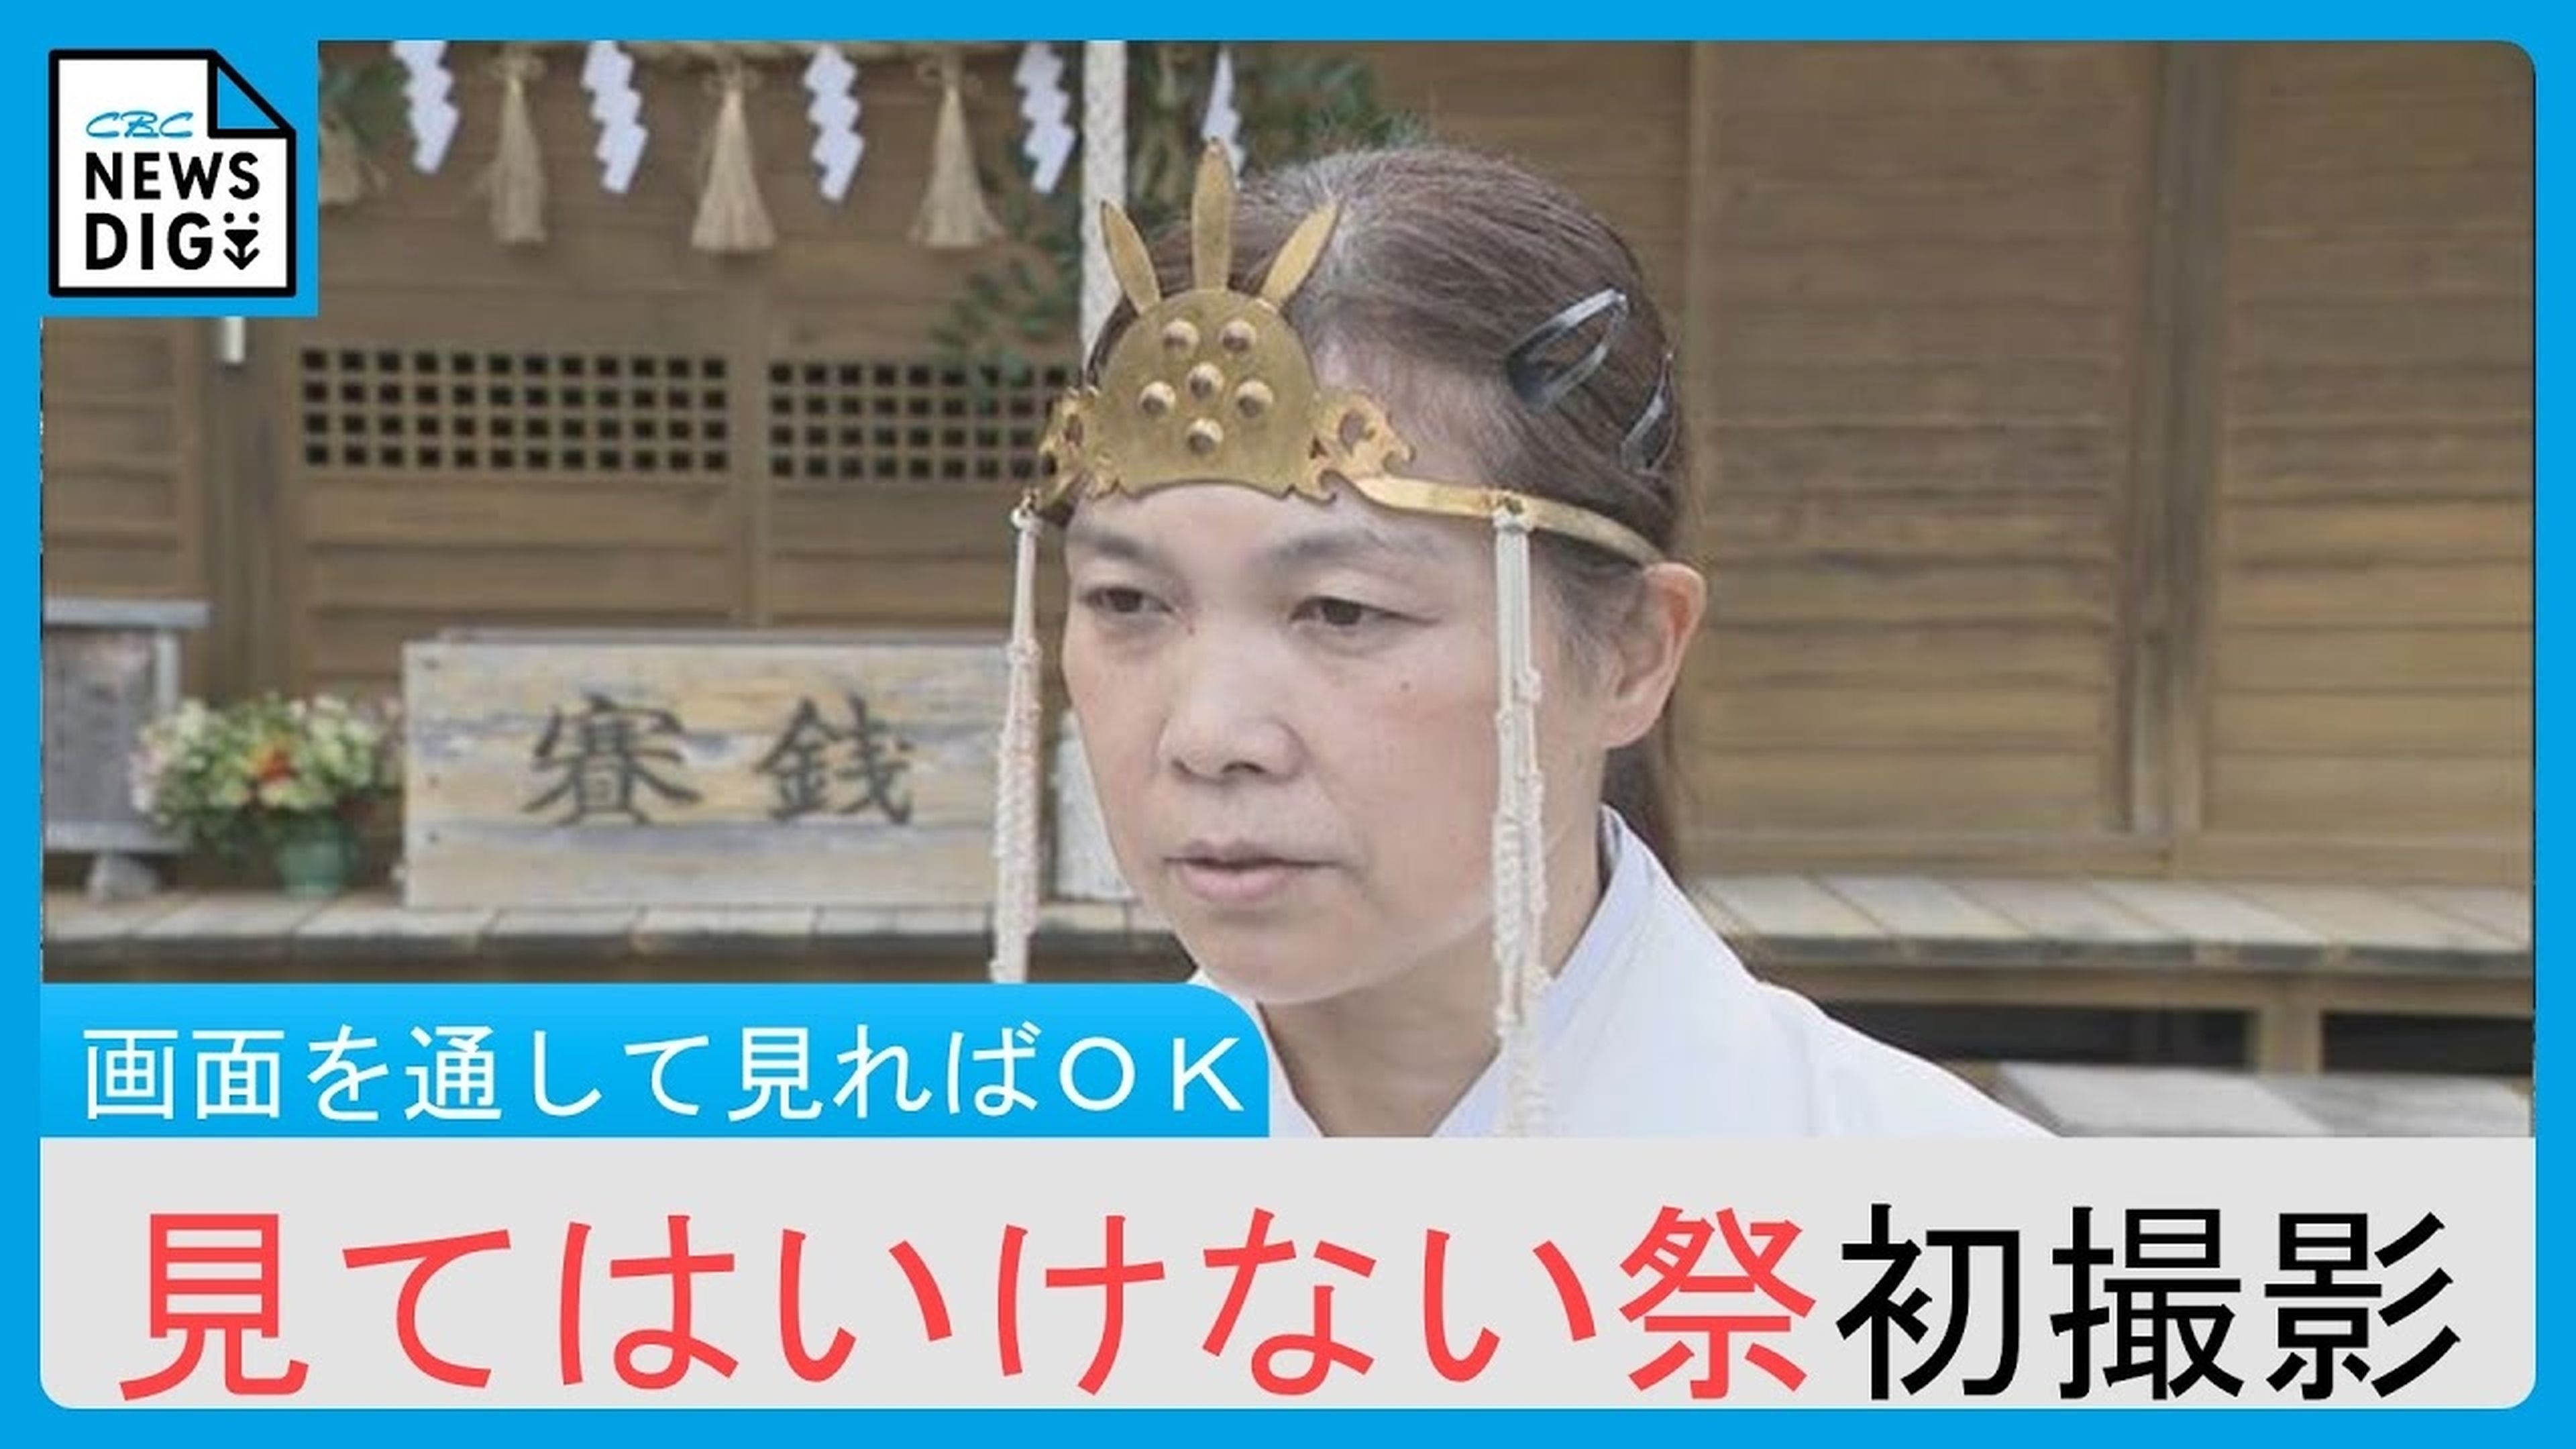 Un festival japonés que se celebra desde hace 300 años, maldice a todo el que lo contempla: ¿te atreves a ver el vídeo?